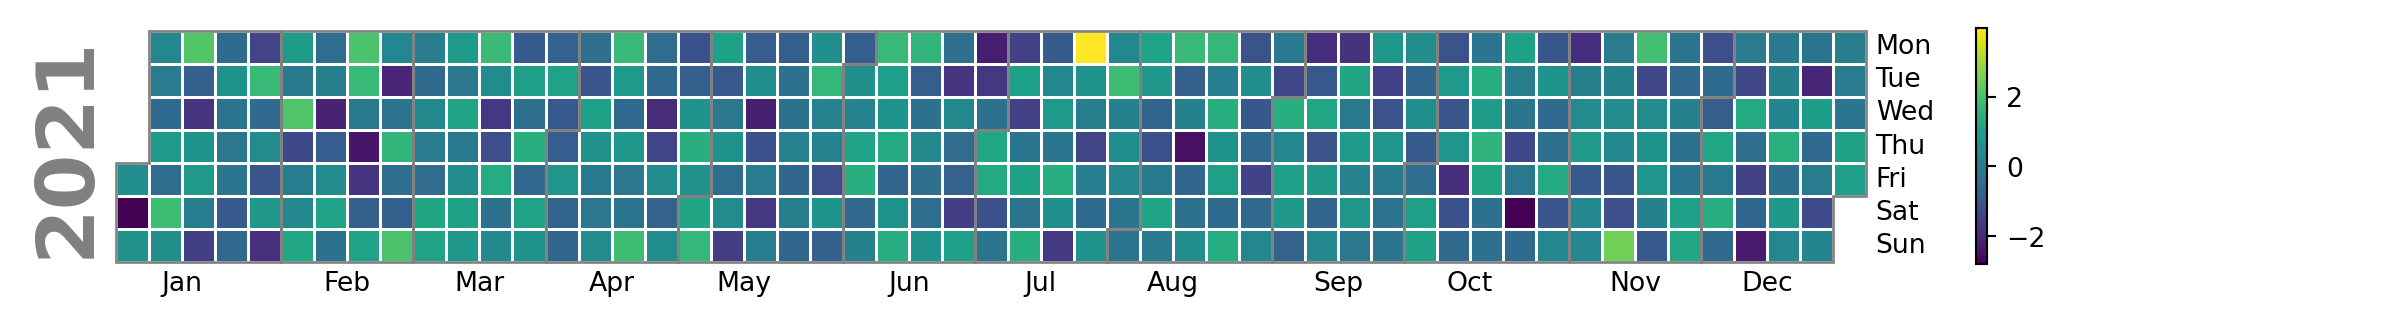 Calendario de contribuciones en Python basado en matplotlib